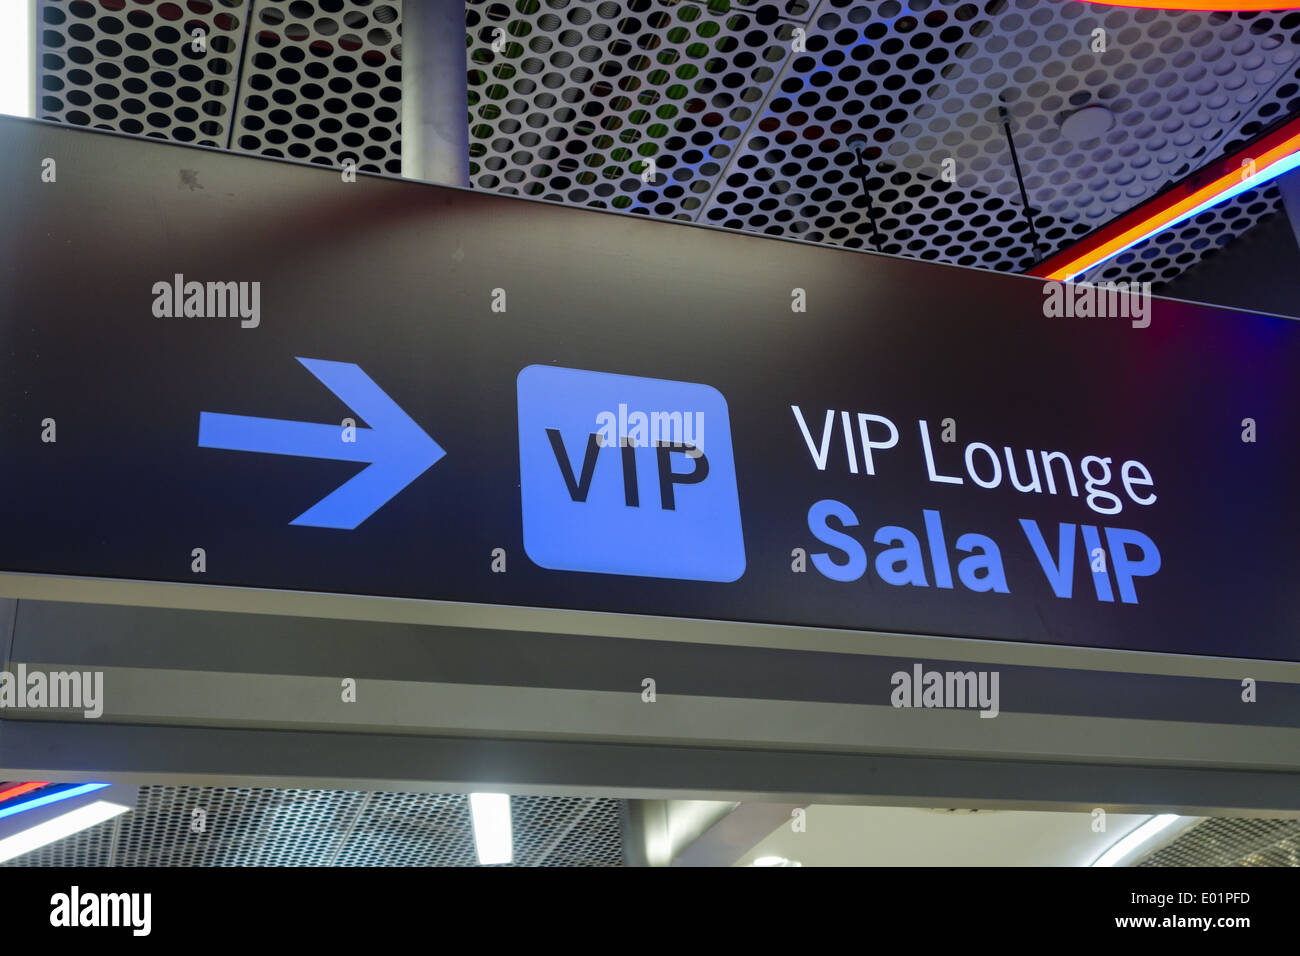 Aeropuerto de Madrid Barajas, Sala VIP, VIP Lounge, Spagna, Madrid Foto Stock